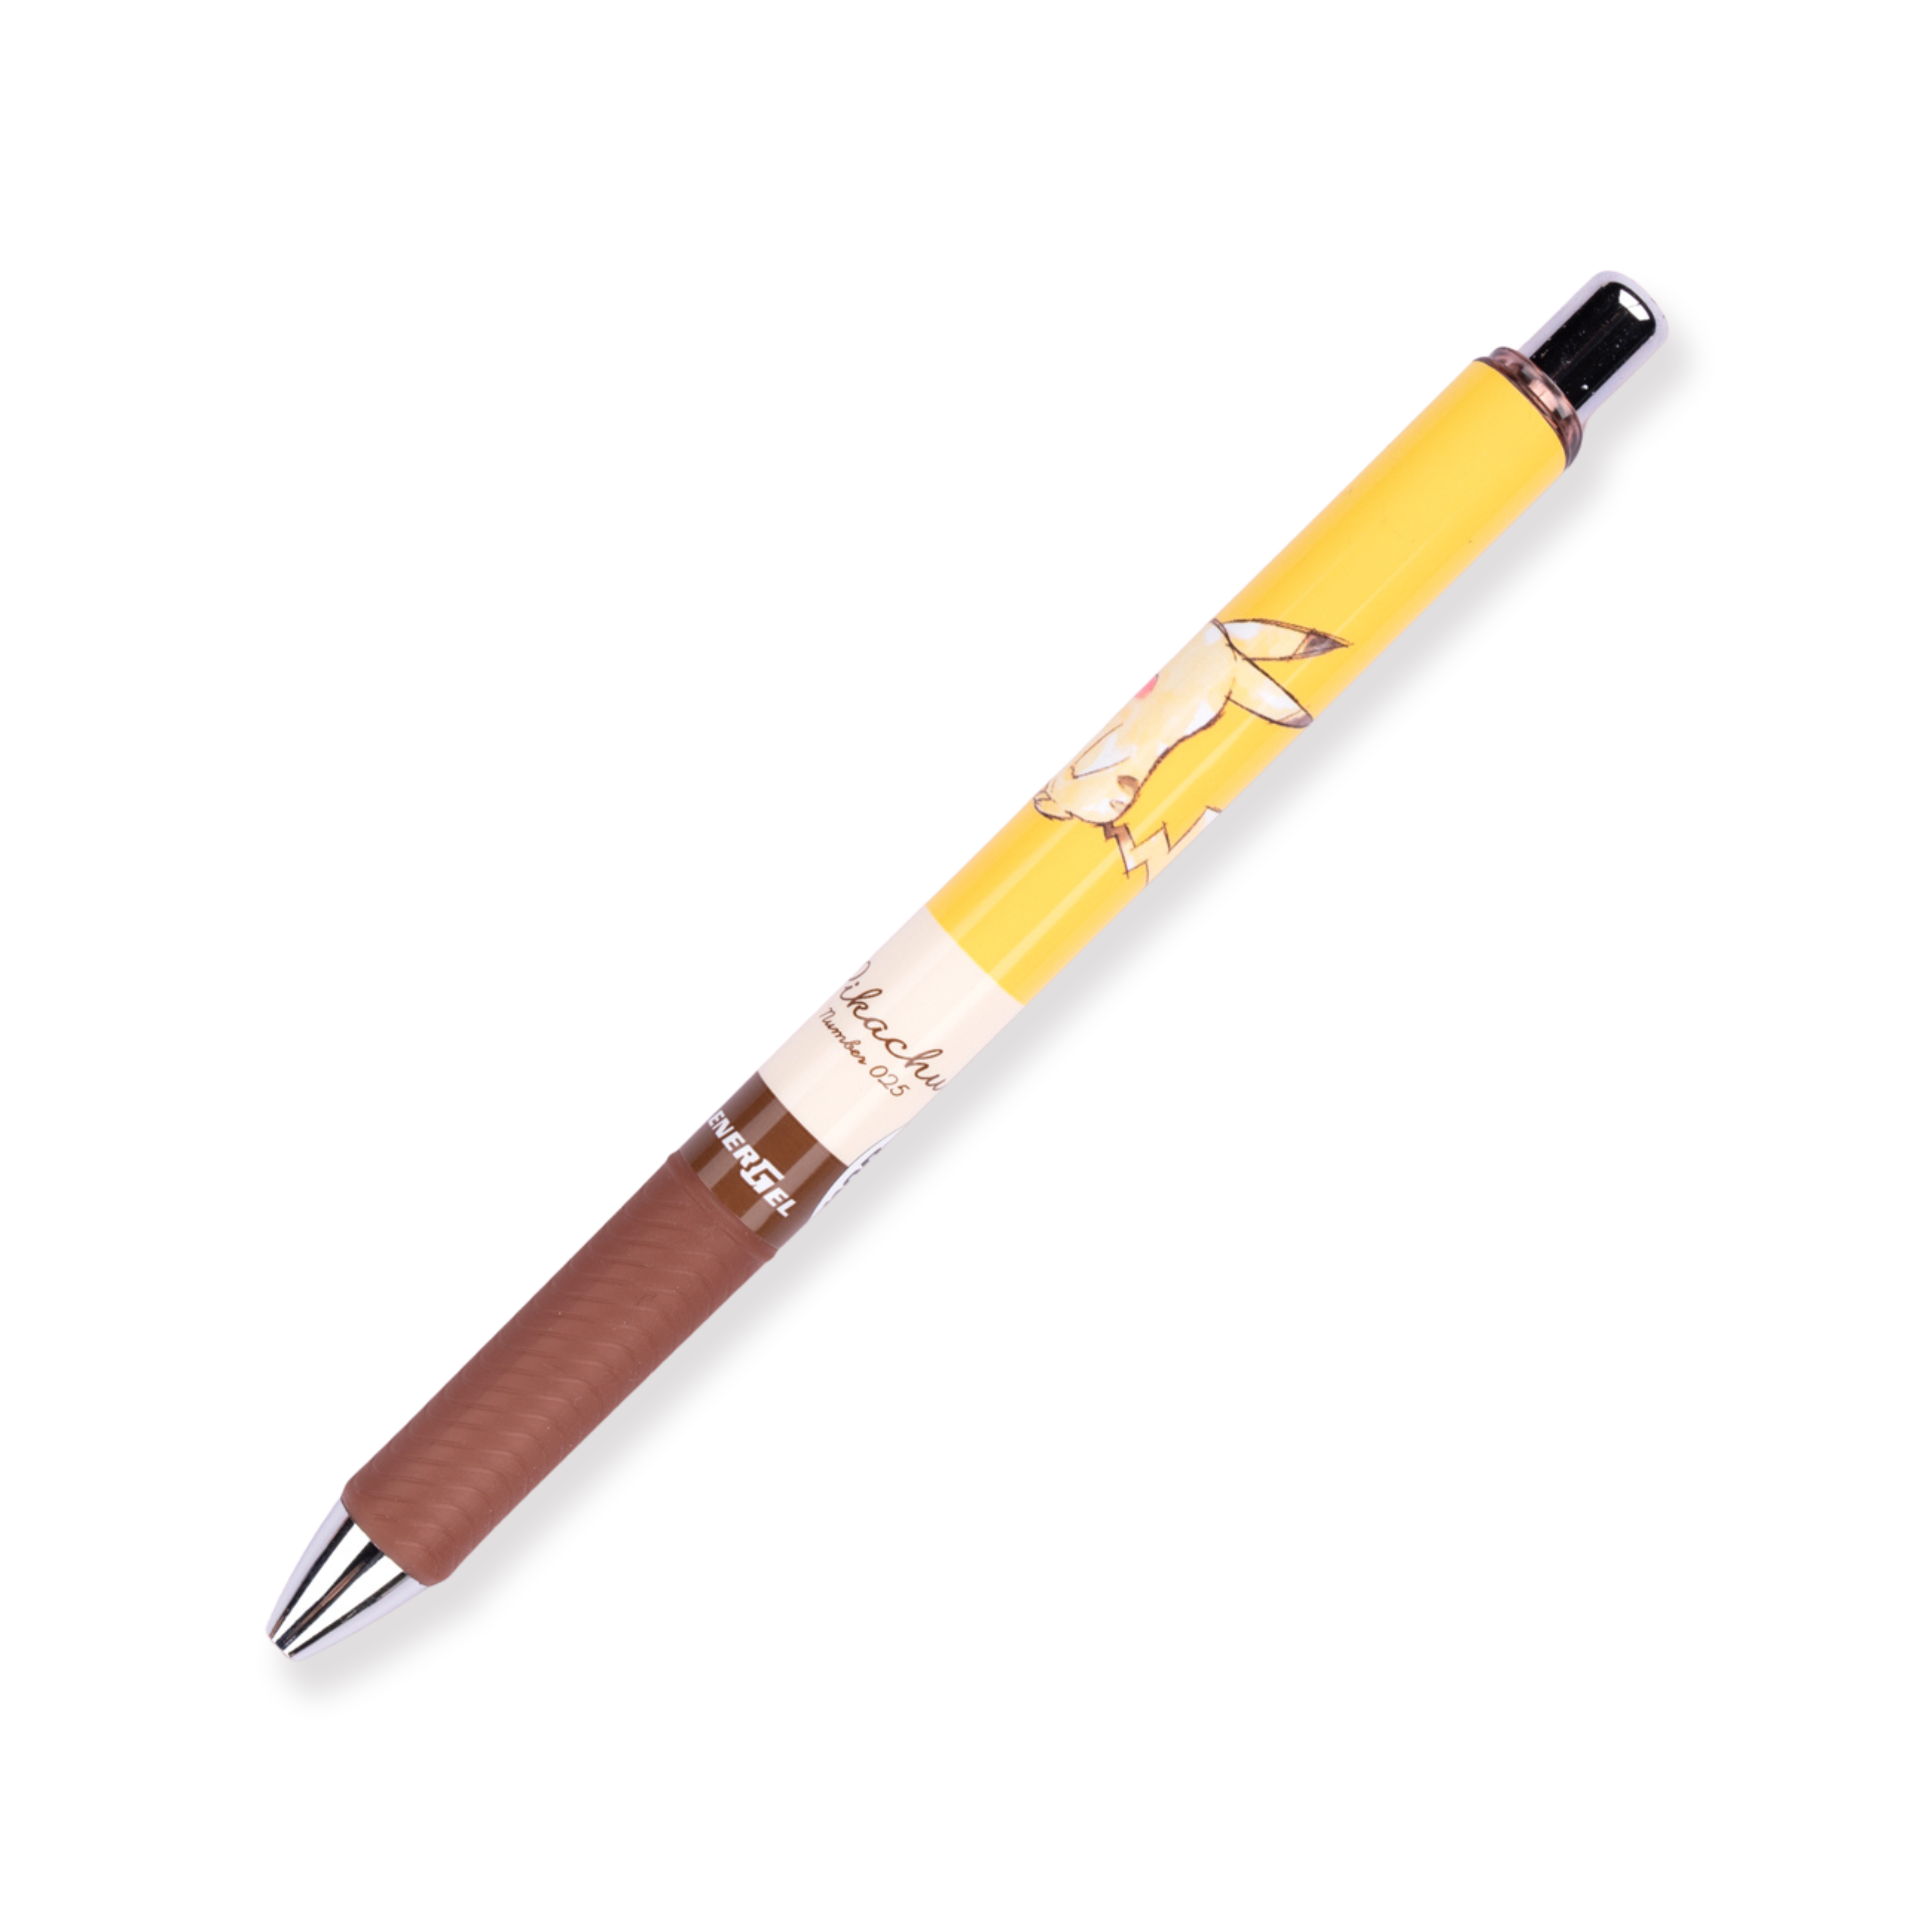 Bolígrafo de gel Pentel EnerGel Pikachu de edición limitada - 0,5 mm - Tinta negra - Agarre marrón